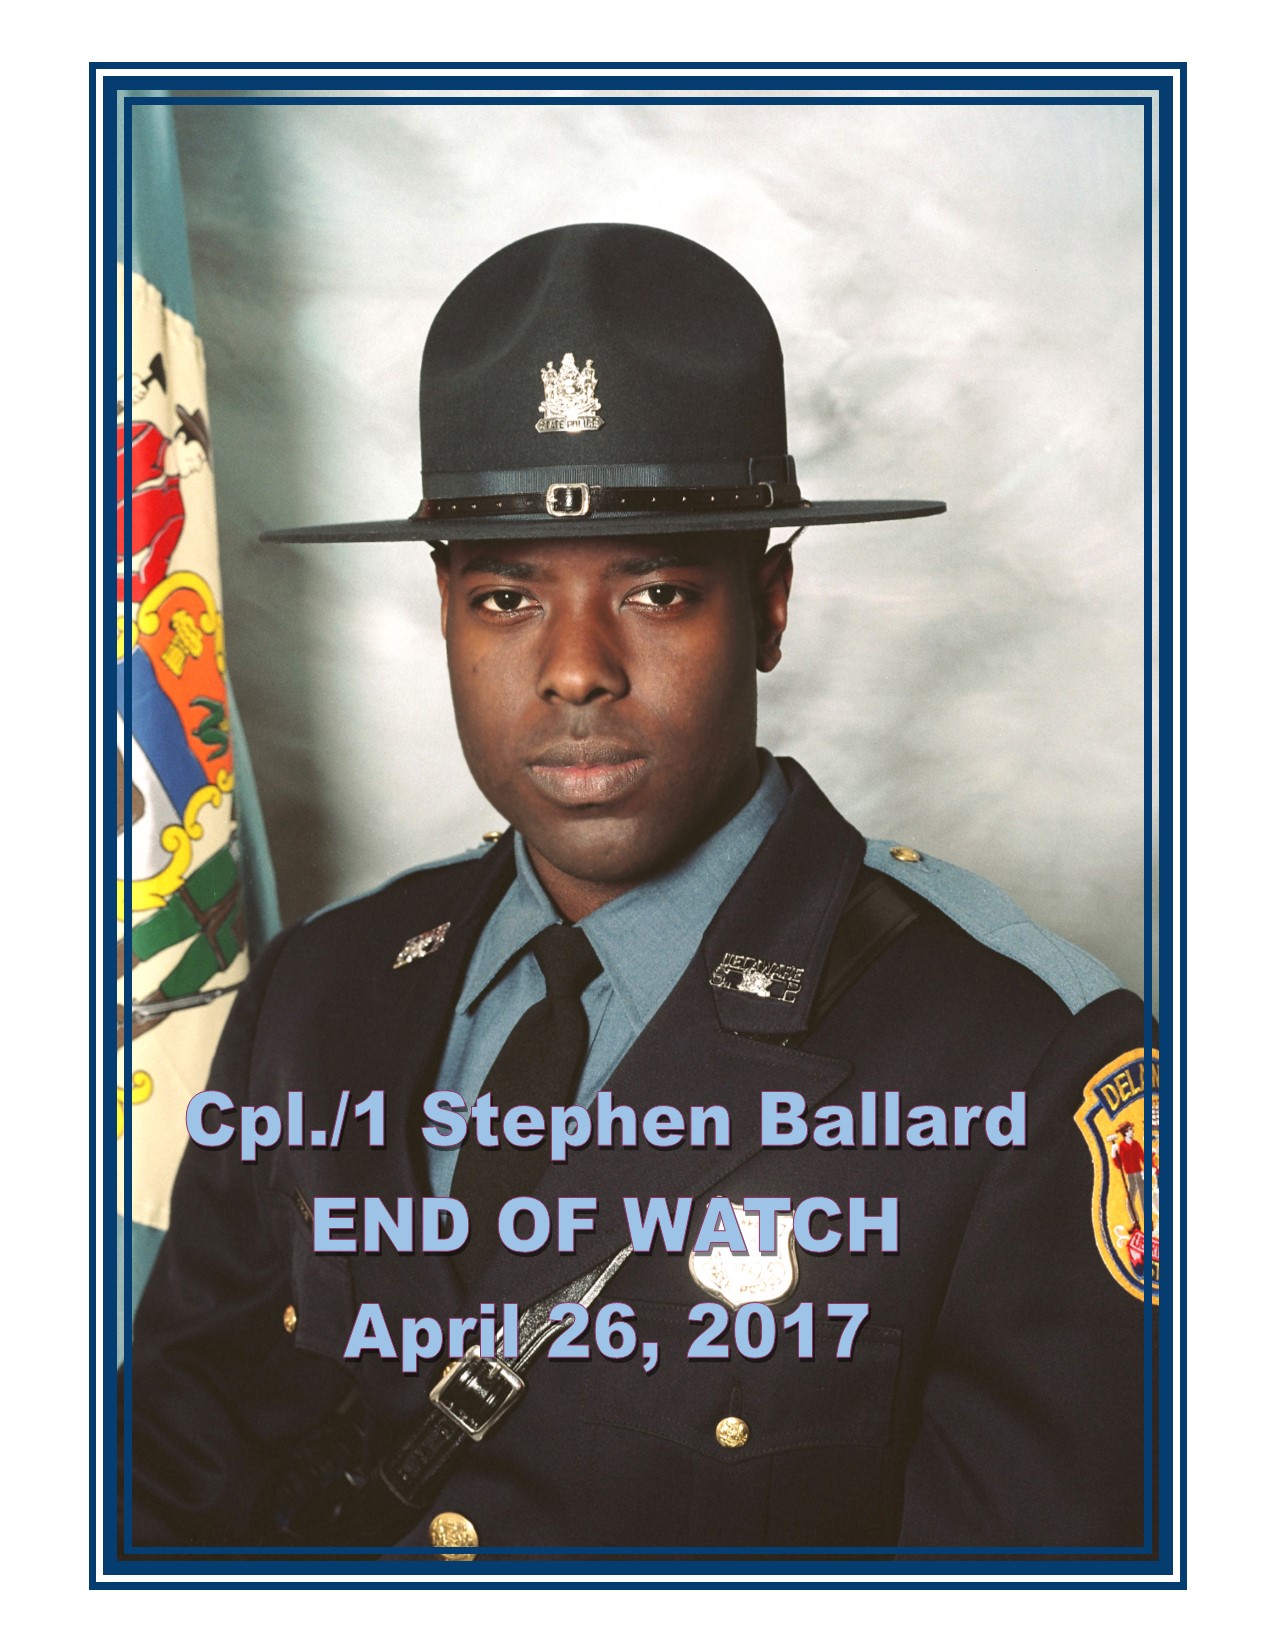 Fallen Trooper Corporal First Class Stephen Ballard